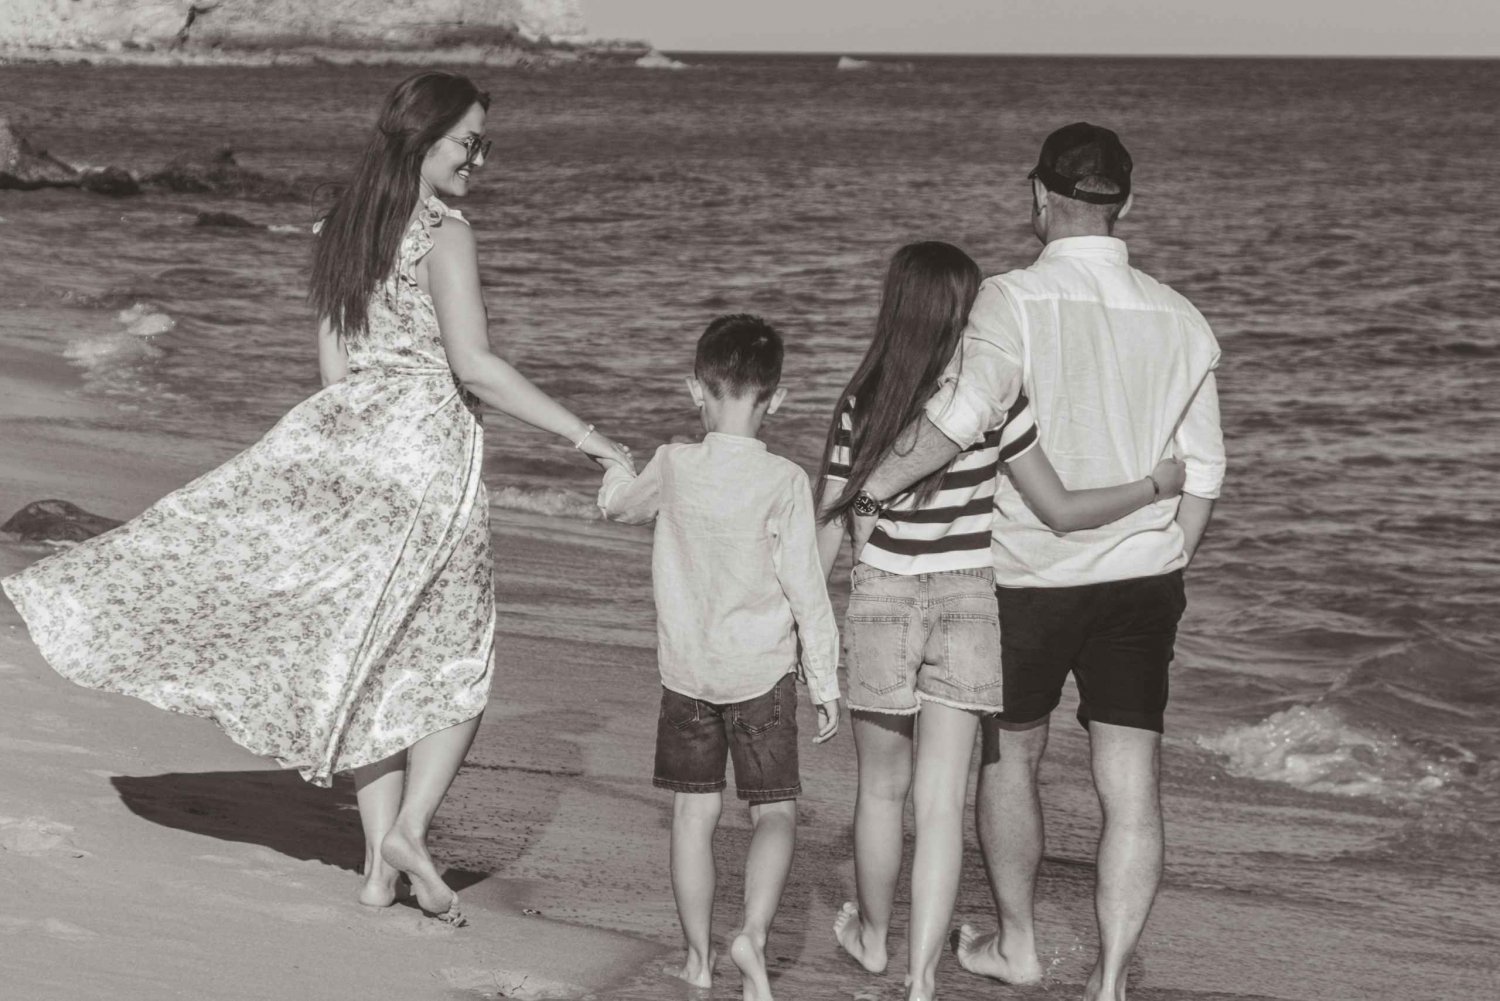 Algarve: Family photoshoot experience